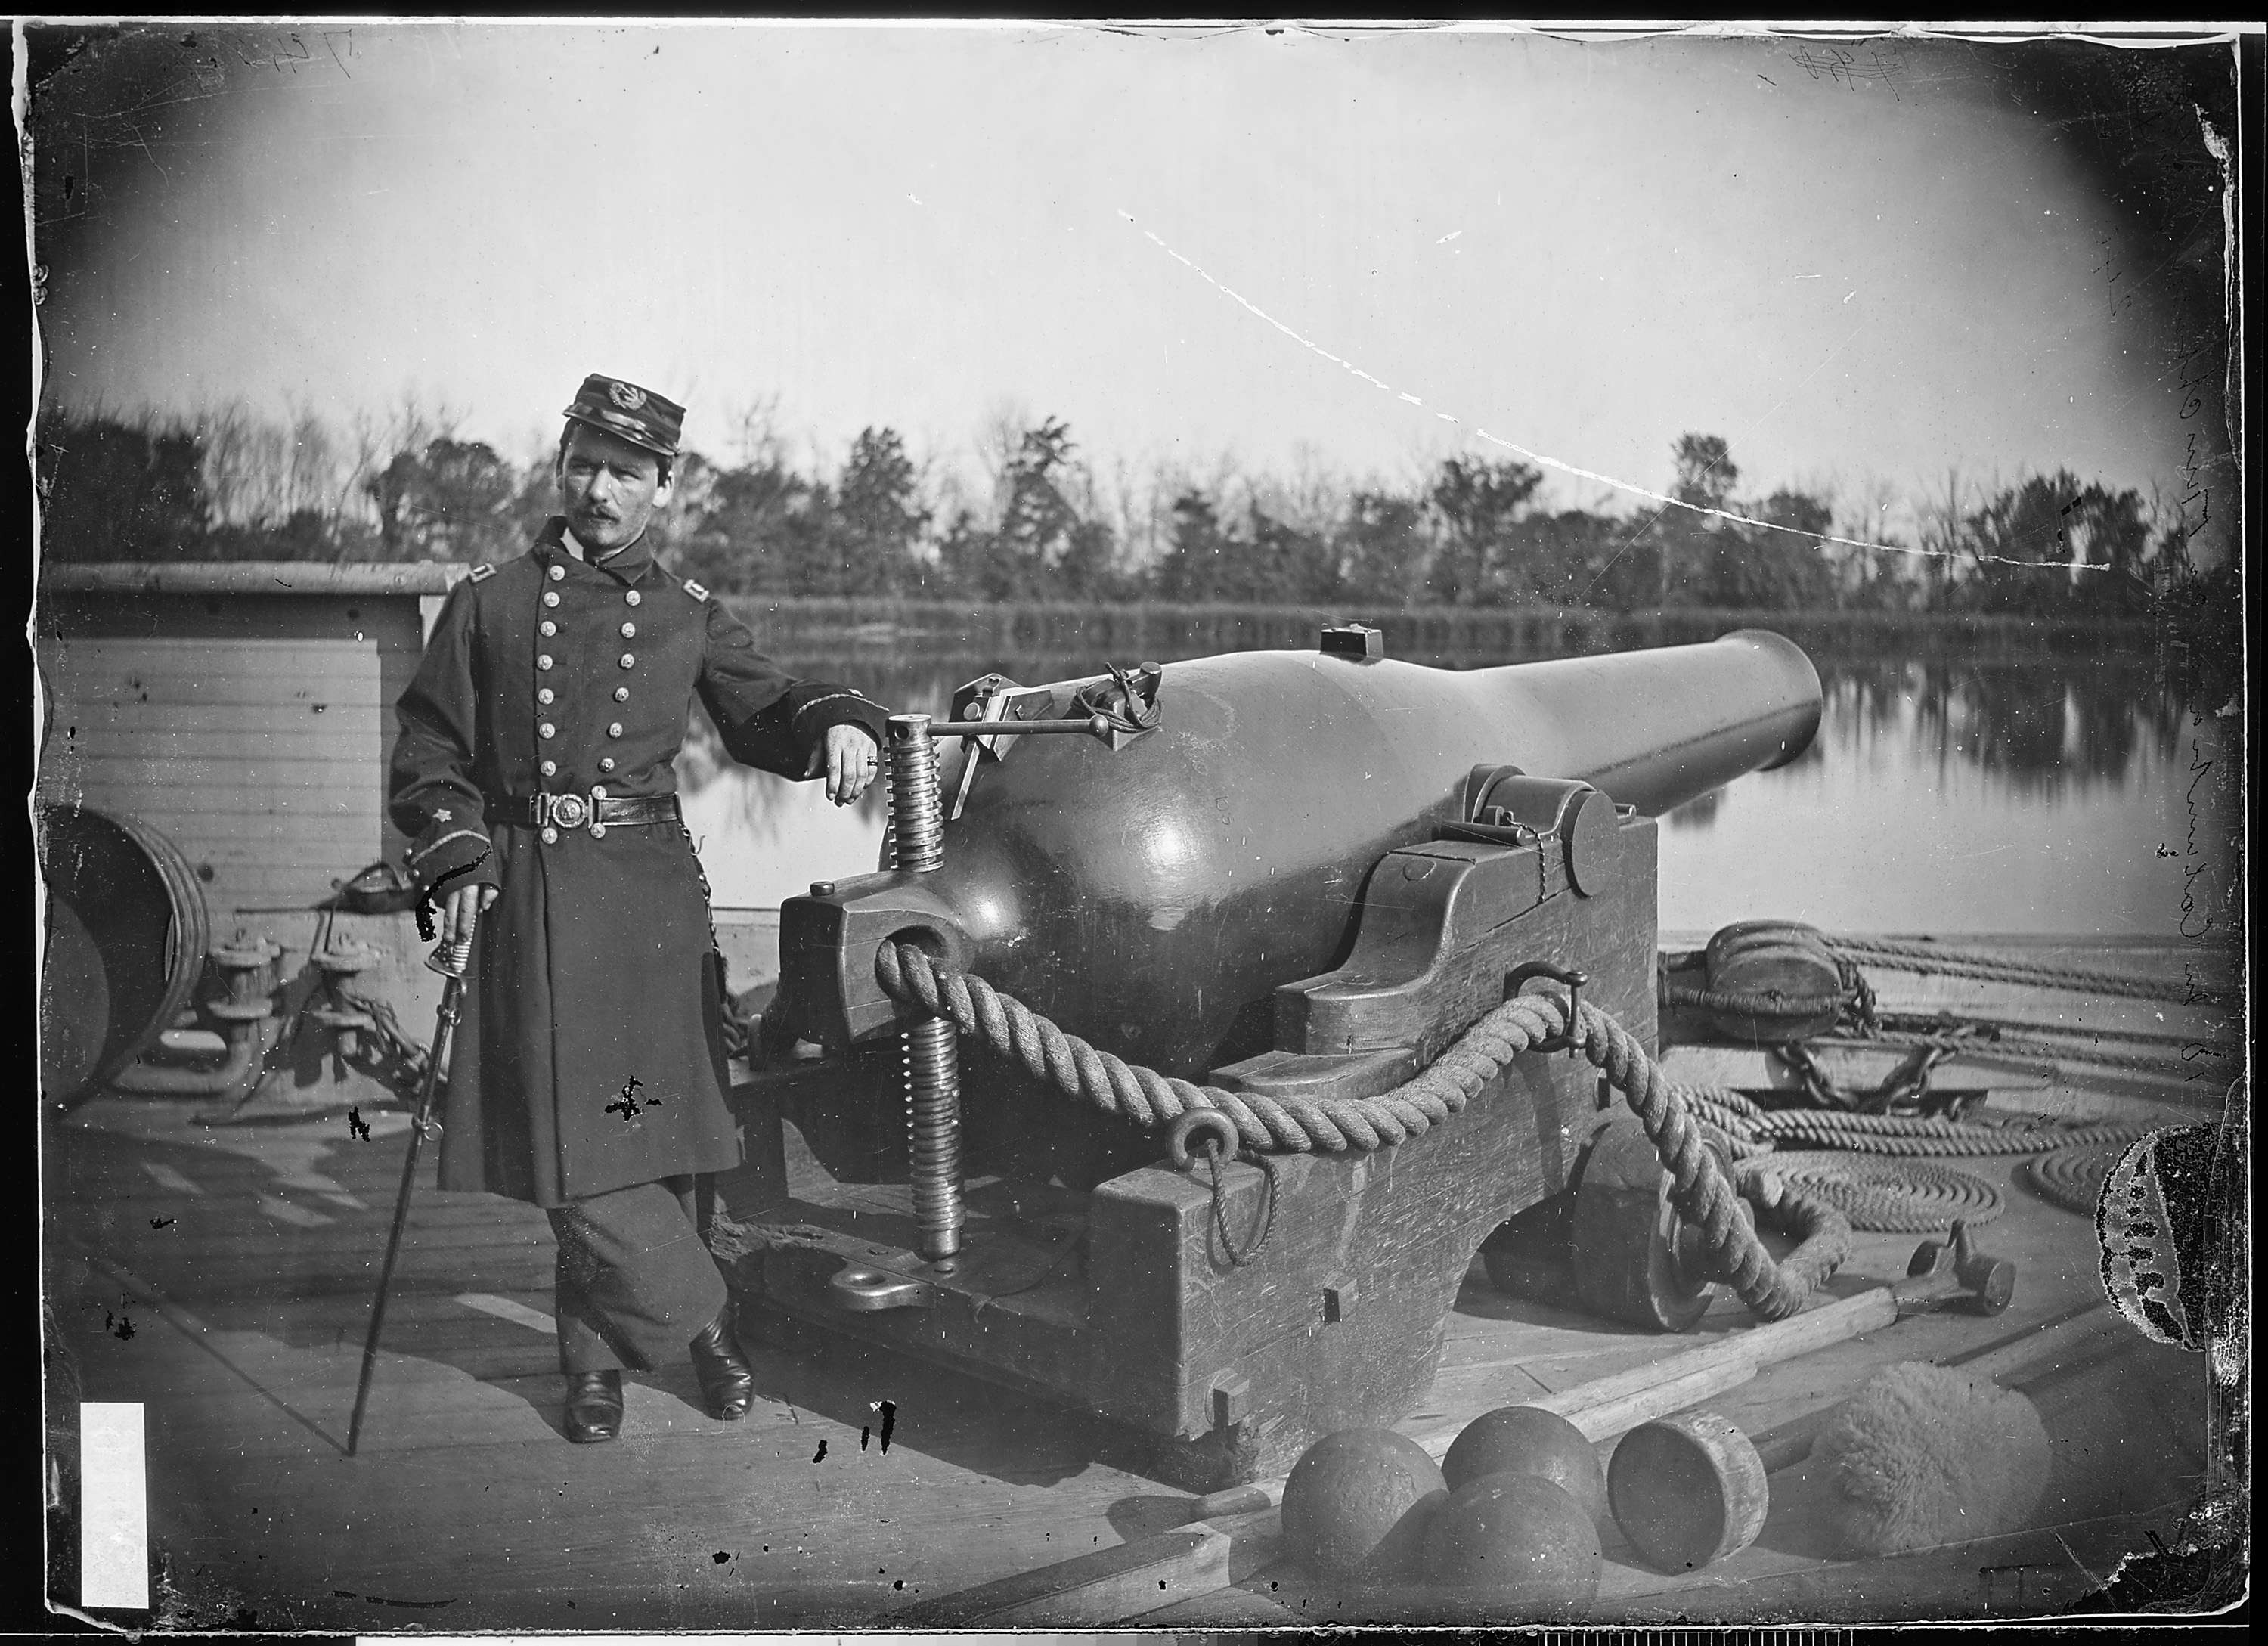 Deck of gunboat "Hunchback", on James River